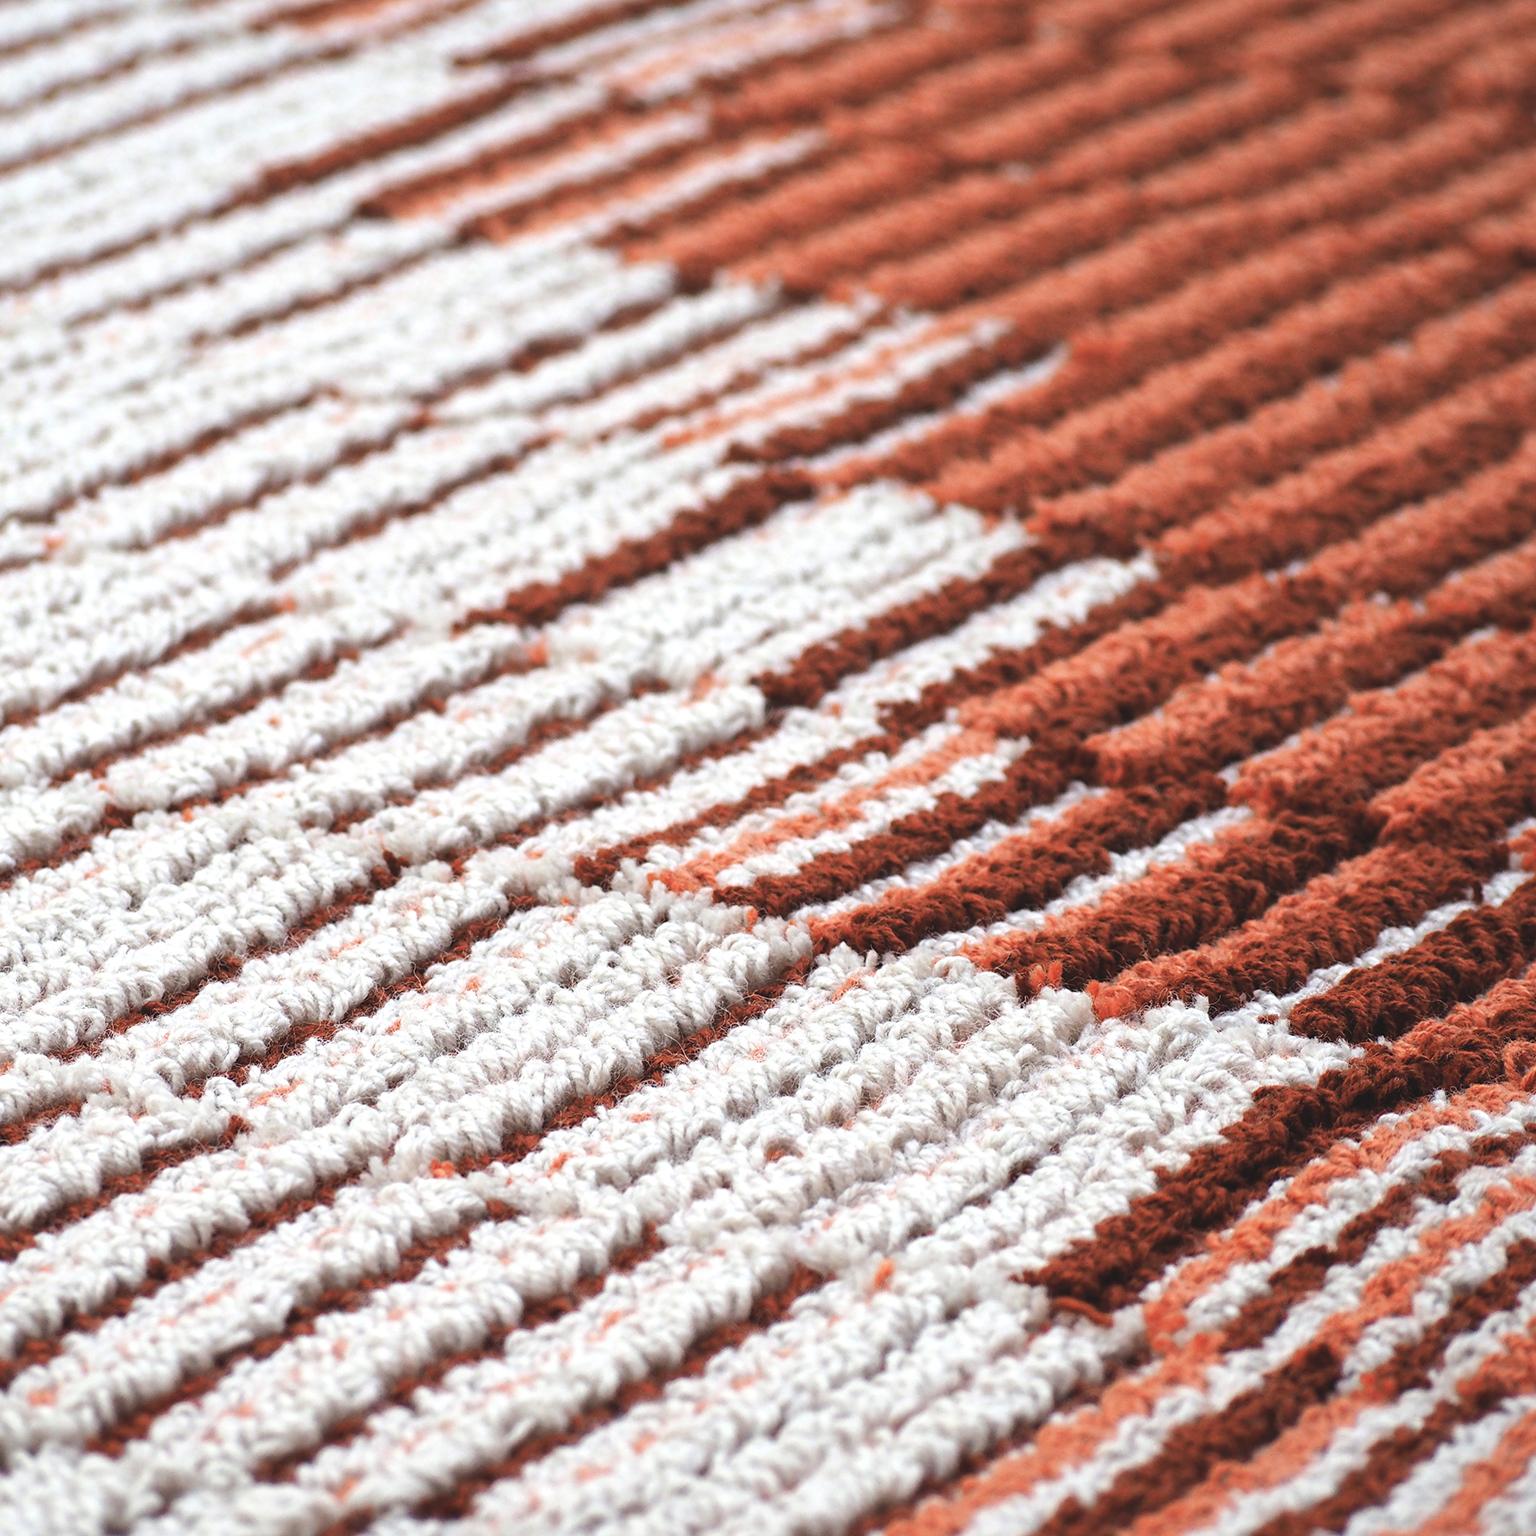 tapis touffeté 100% laine de Nouvelle-Zélande de qualité supérieure 
Conçu par Alissa + Nienke Studio
Fabriqué en Italie

Un design simple qui cache une touche très complexe de superpositions et de hauteurs.

Gelosie est un tapis en laine